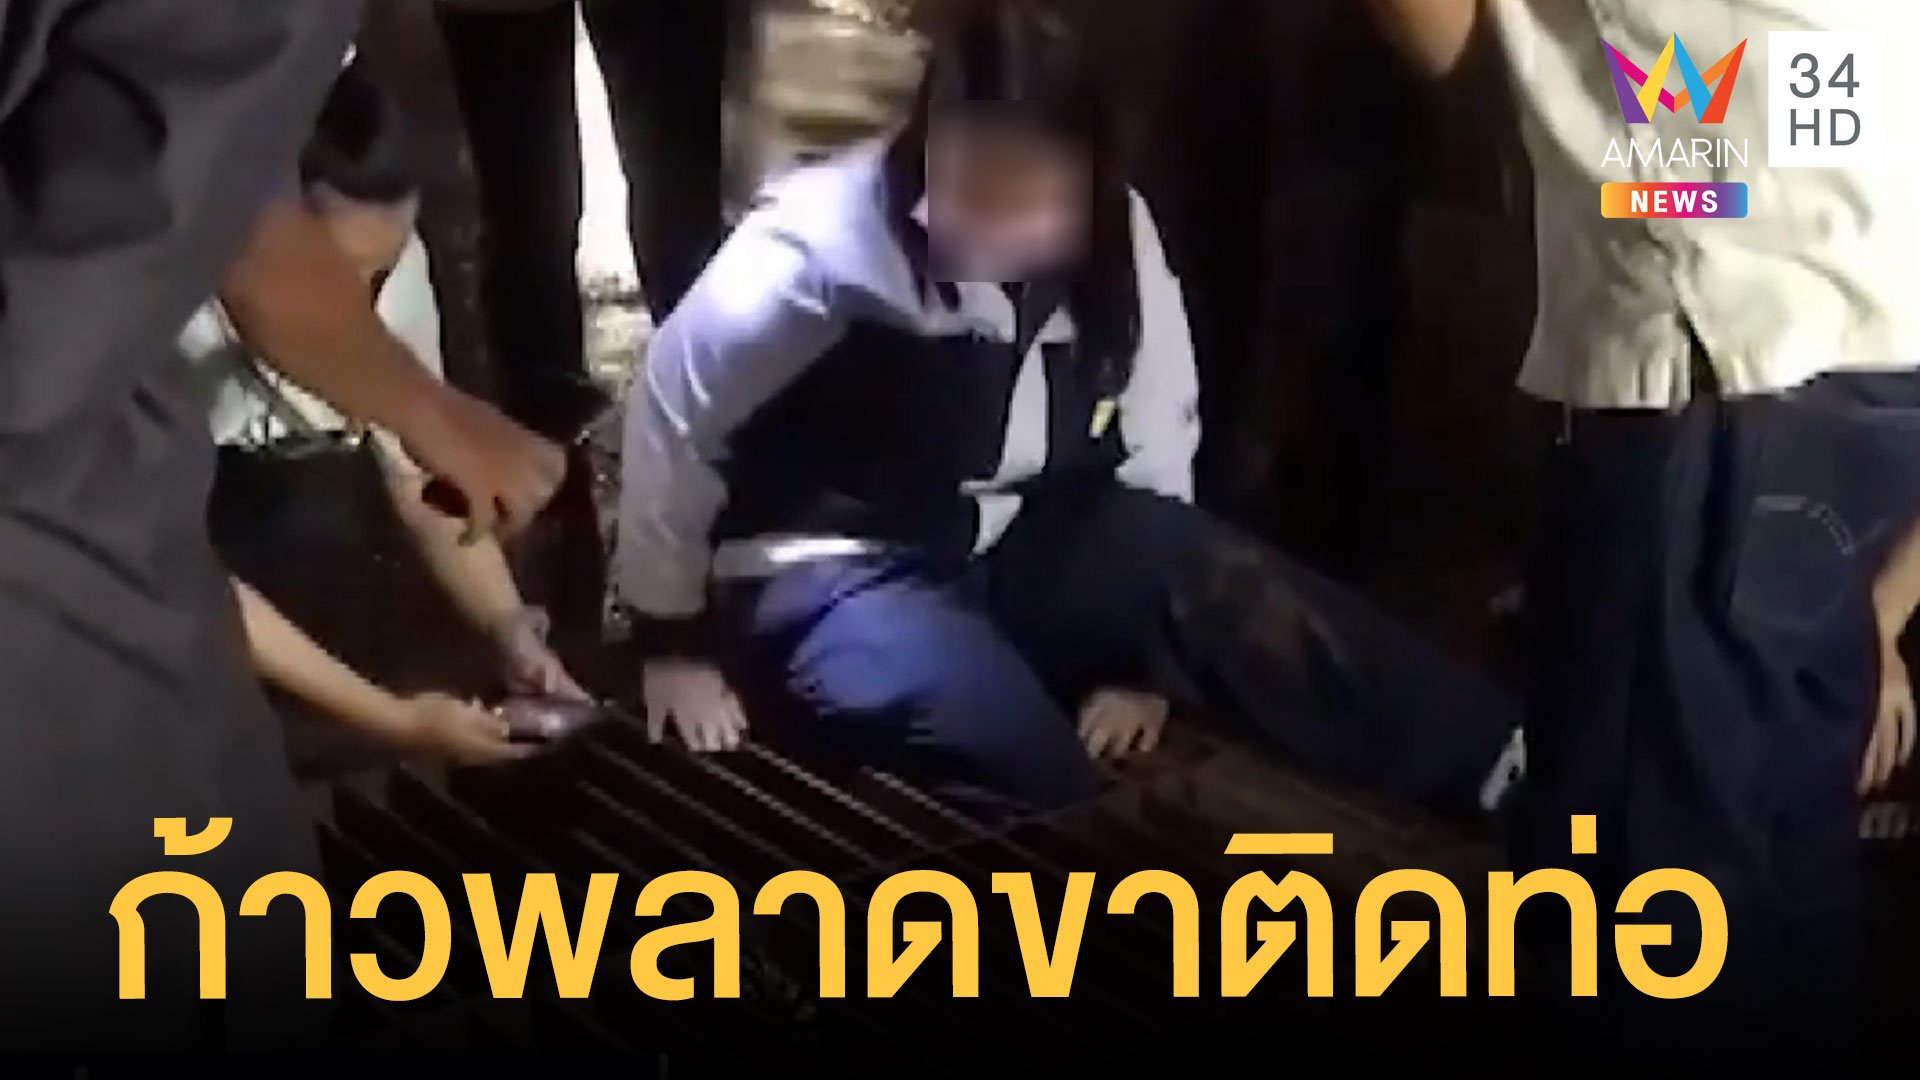 สาวโรงงานพลัดตกท่อ ขาติด ร้องไห้ระงม กู้ภัยเร่งช่วยเหลือ | ข่าวเที่ยงอมรินทร์ | 16 ส.ค. 65 | AMARIN TVHD34